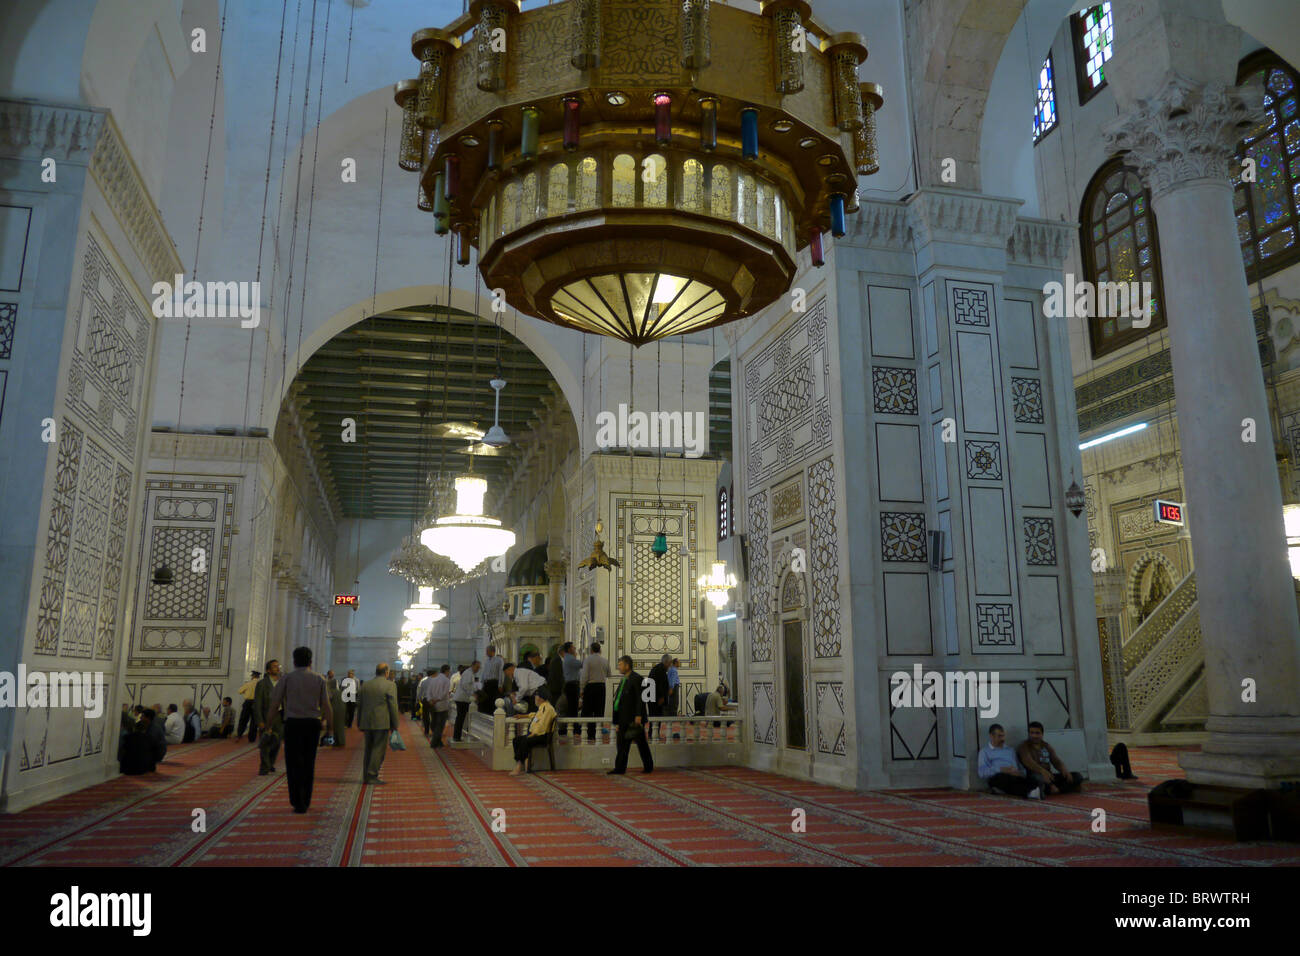 La Siria all'interno della moschea Ummayad, Damasco. Fotografia di Sean Sprague Foto Stock